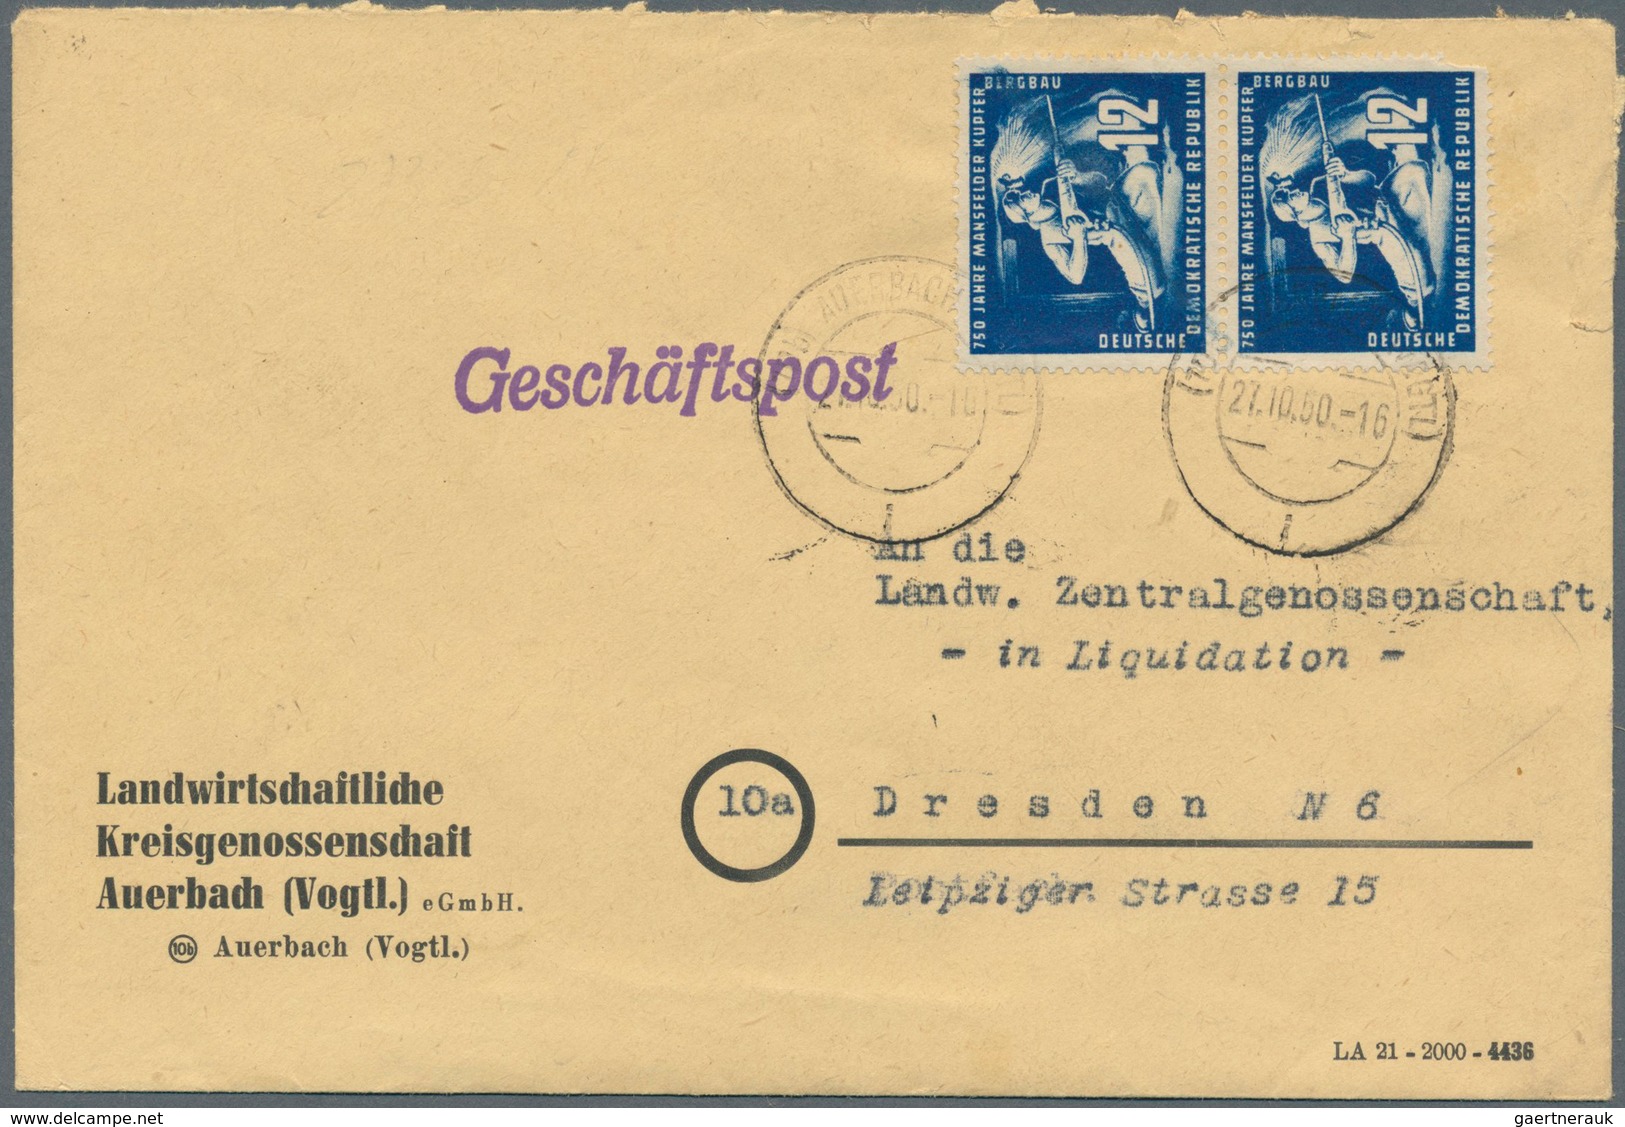 Deutschland: 1912/1945: interessante Partie Briefe und Ganzsachen, dabei ein leicht aufgerautes Hitl